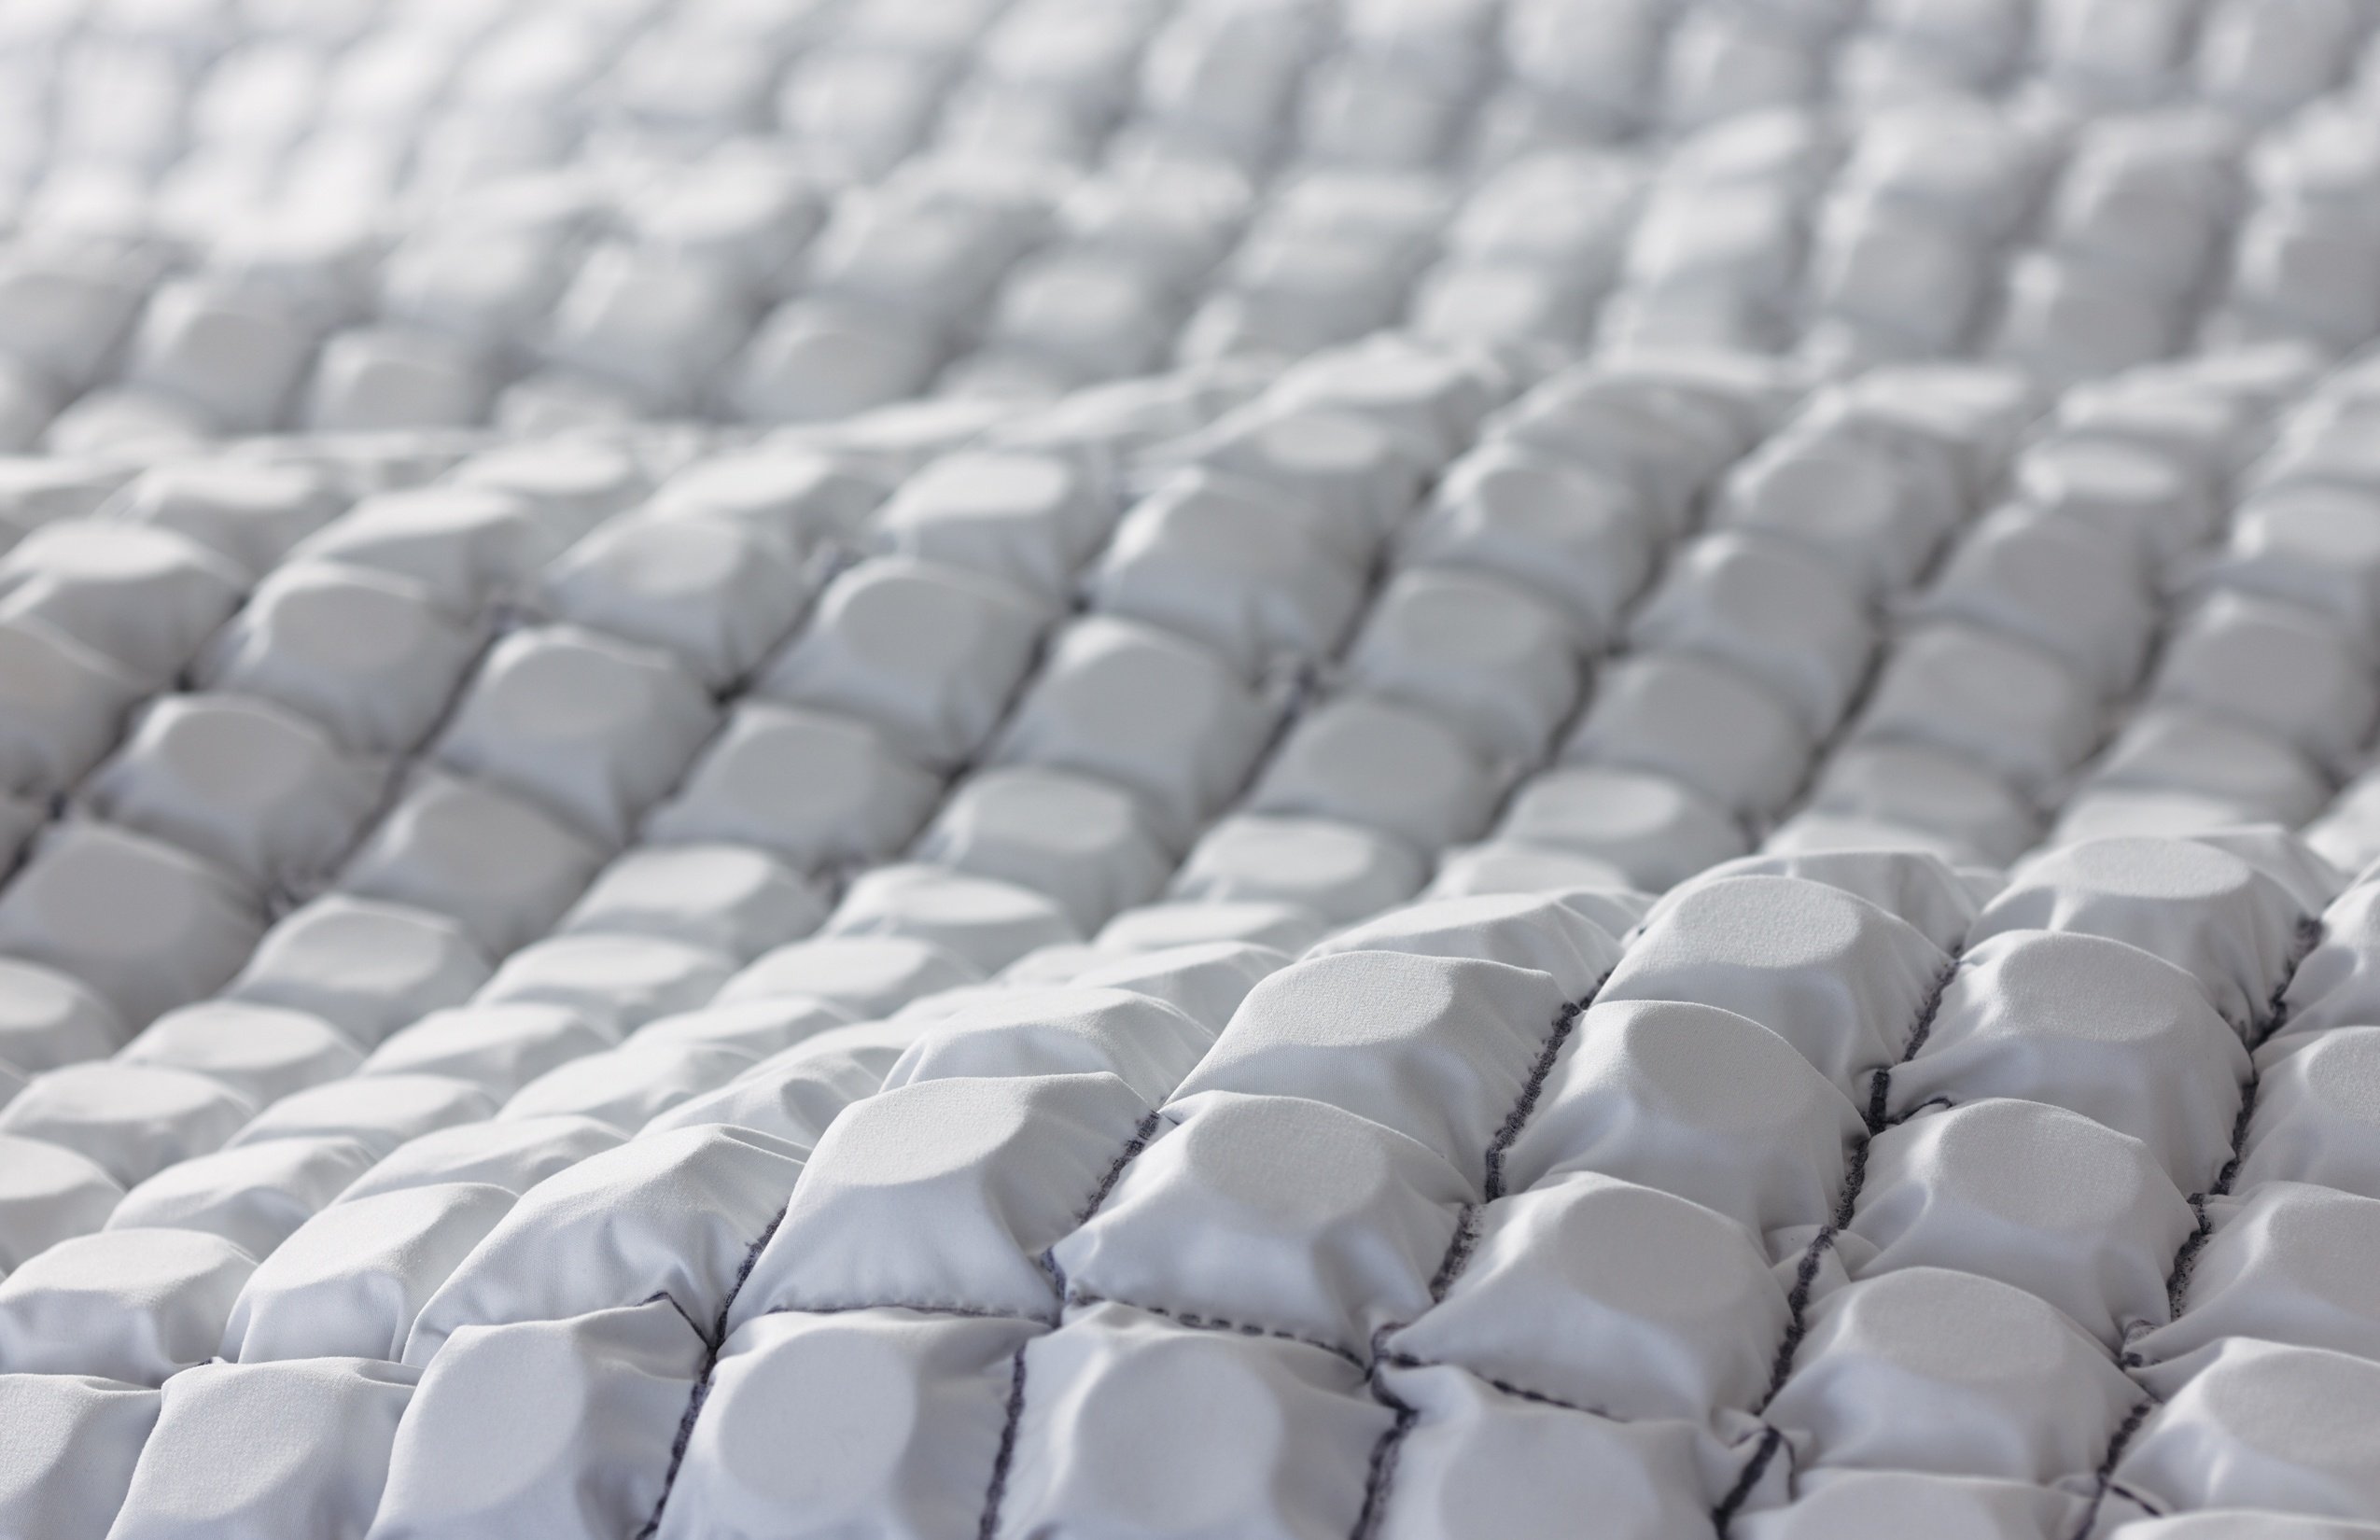 coil on coil foam mattress